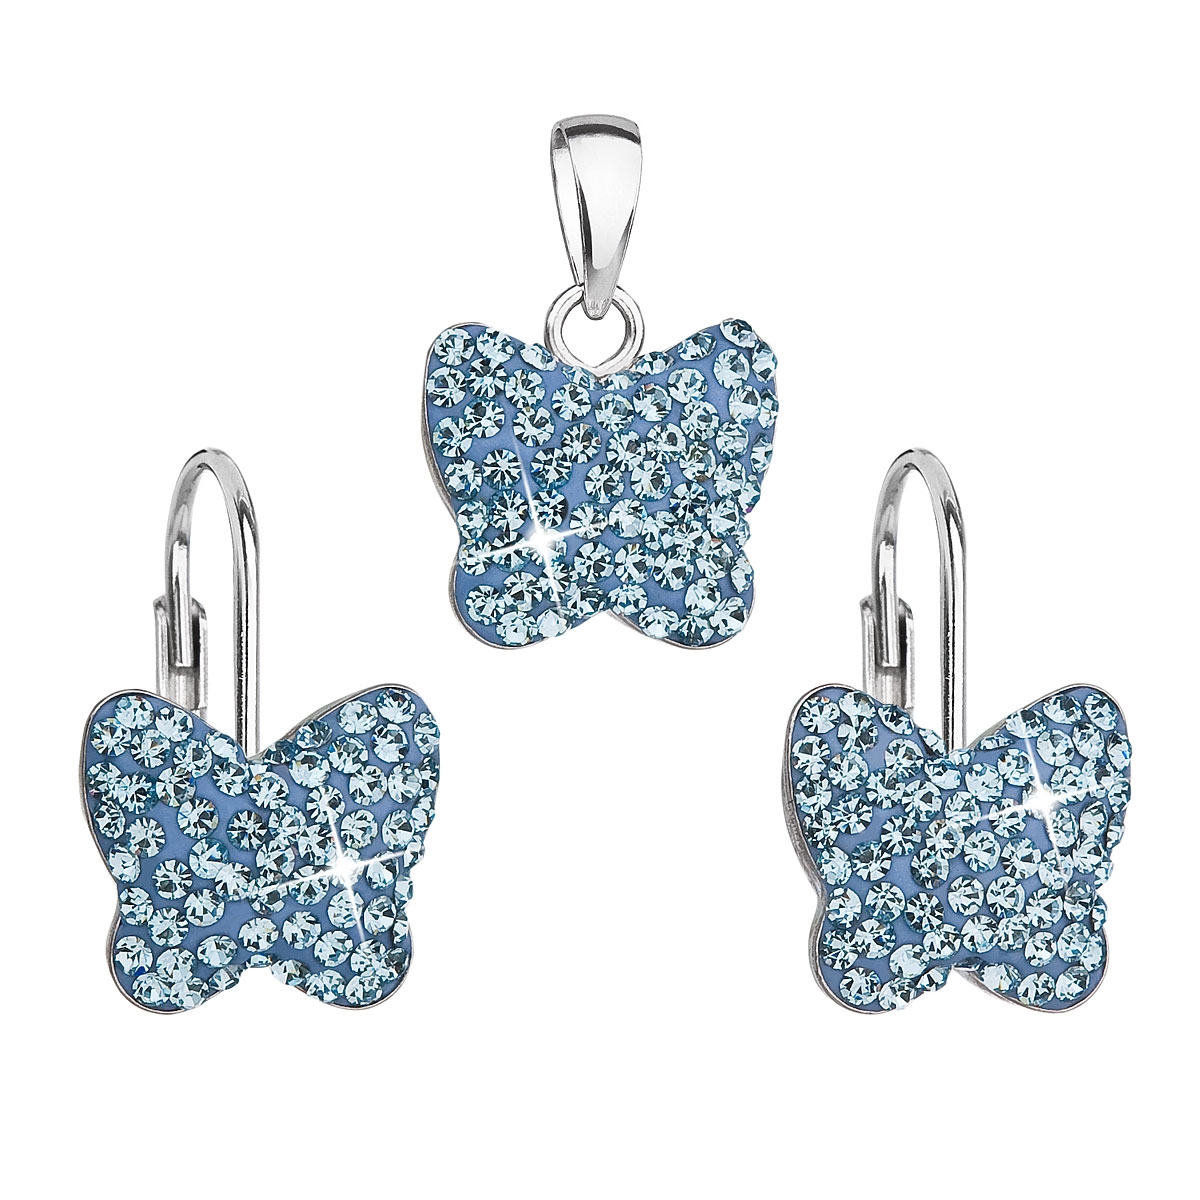 Súprava strieborných šperkov motýle s kryštálmi Crystals from Swarovski ® Aquamarine